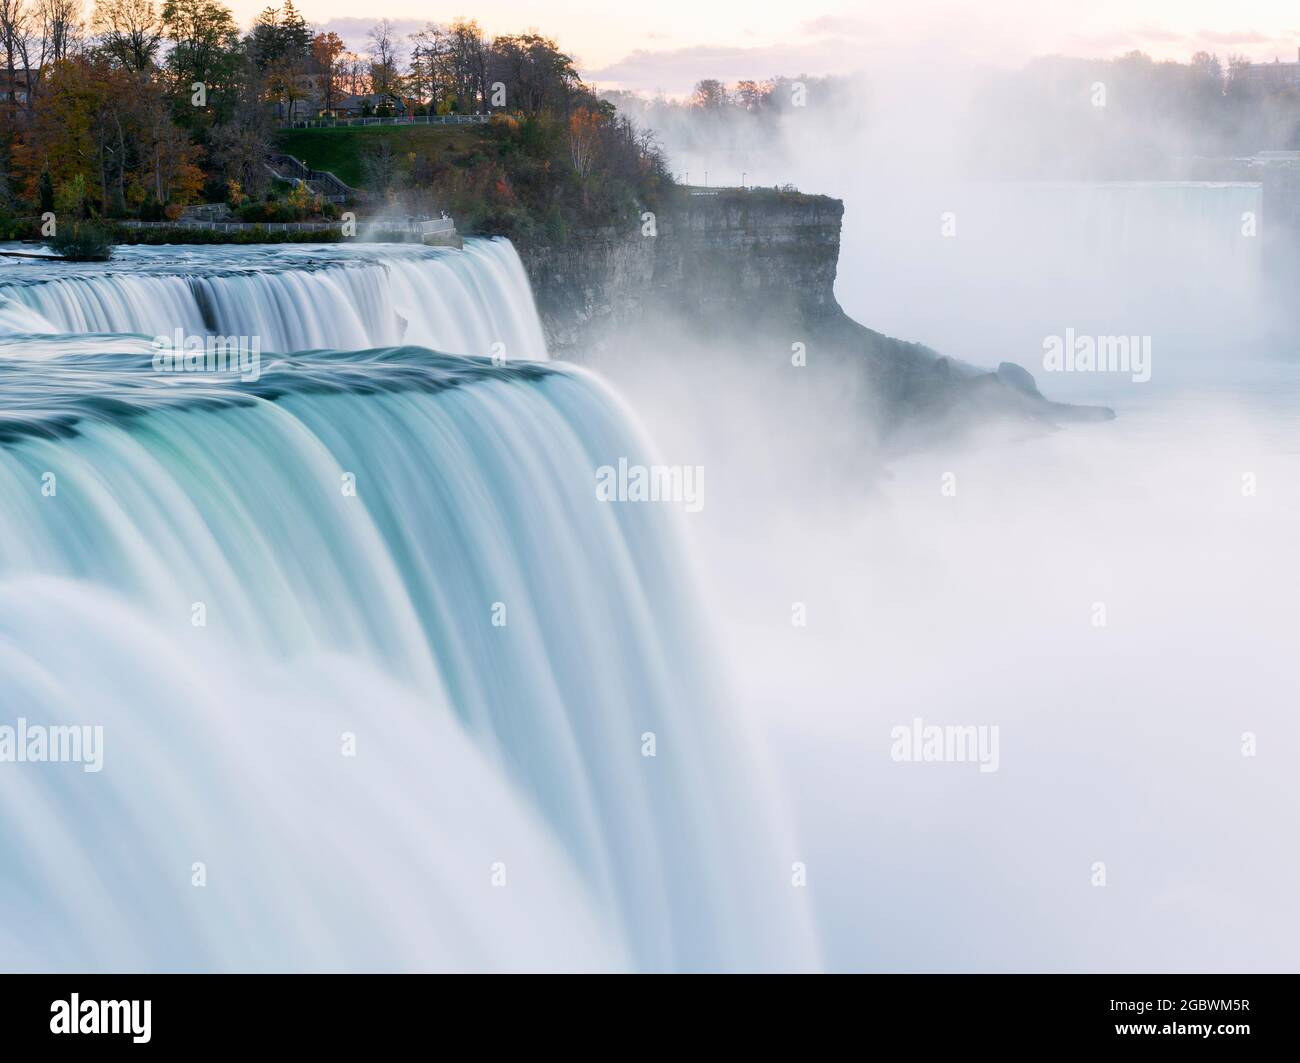 USA, New York, New York State Park, Niagara Falls, gros plan des chutes américaines montrant le grand volume d'eau en cascade sur le bord du gouffre Banque D'Images